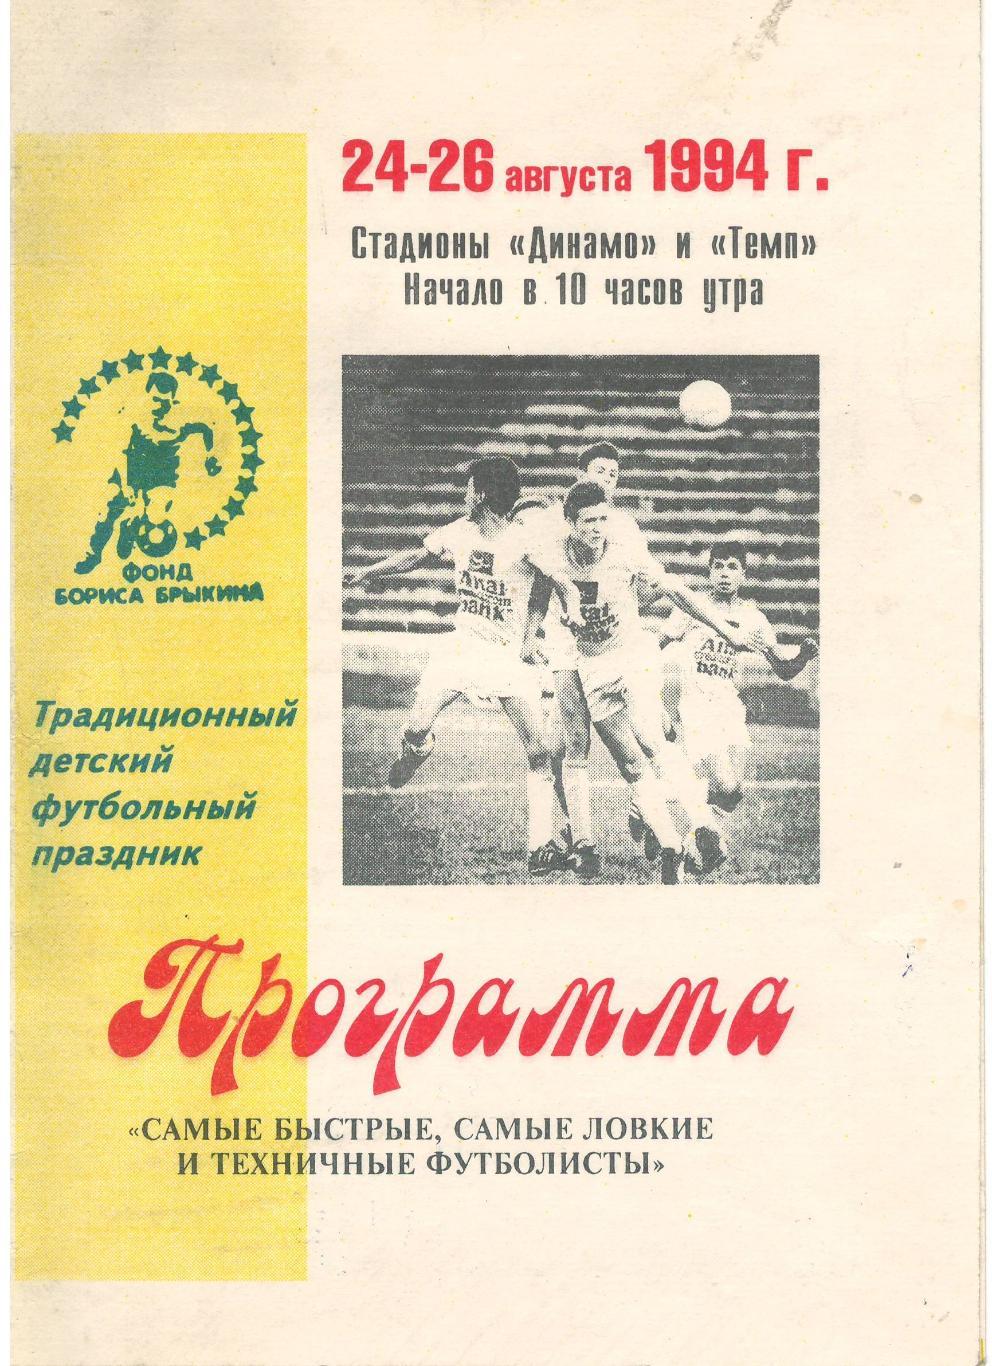 Детский футбольный праздник Барнаул 24-26.08.1994